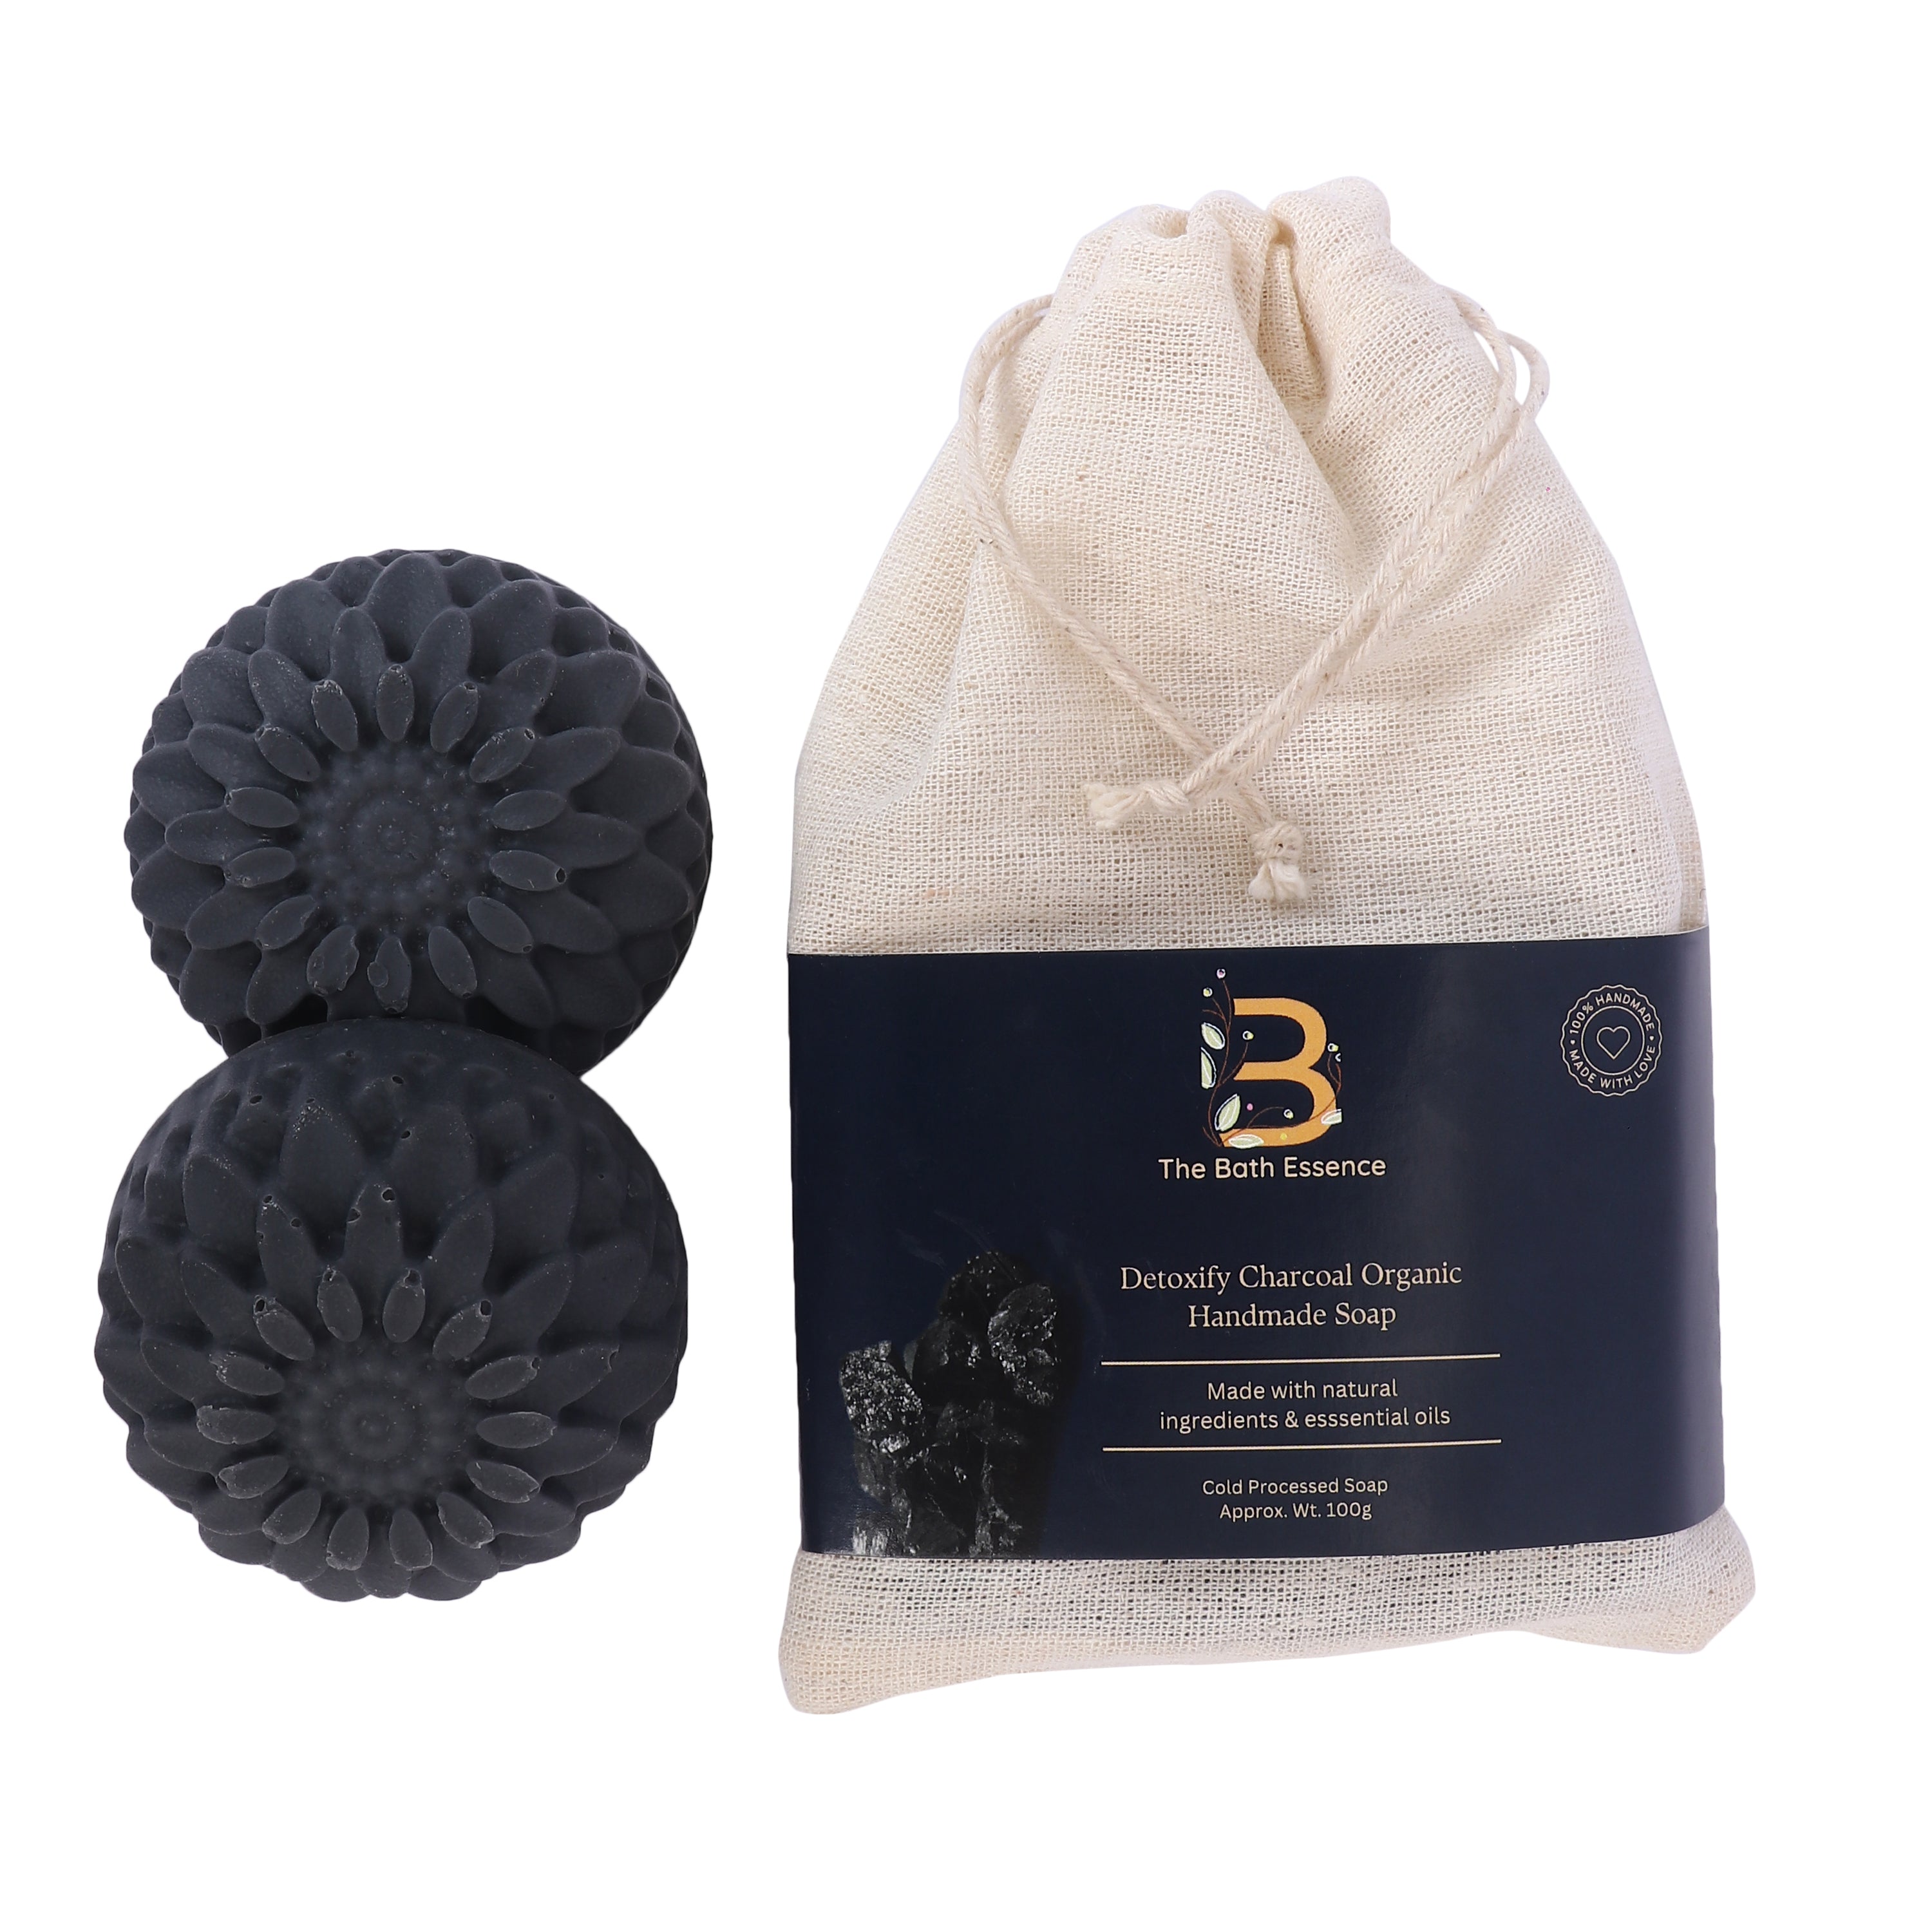 Detoxify Charcoal Organic Handmade Soap